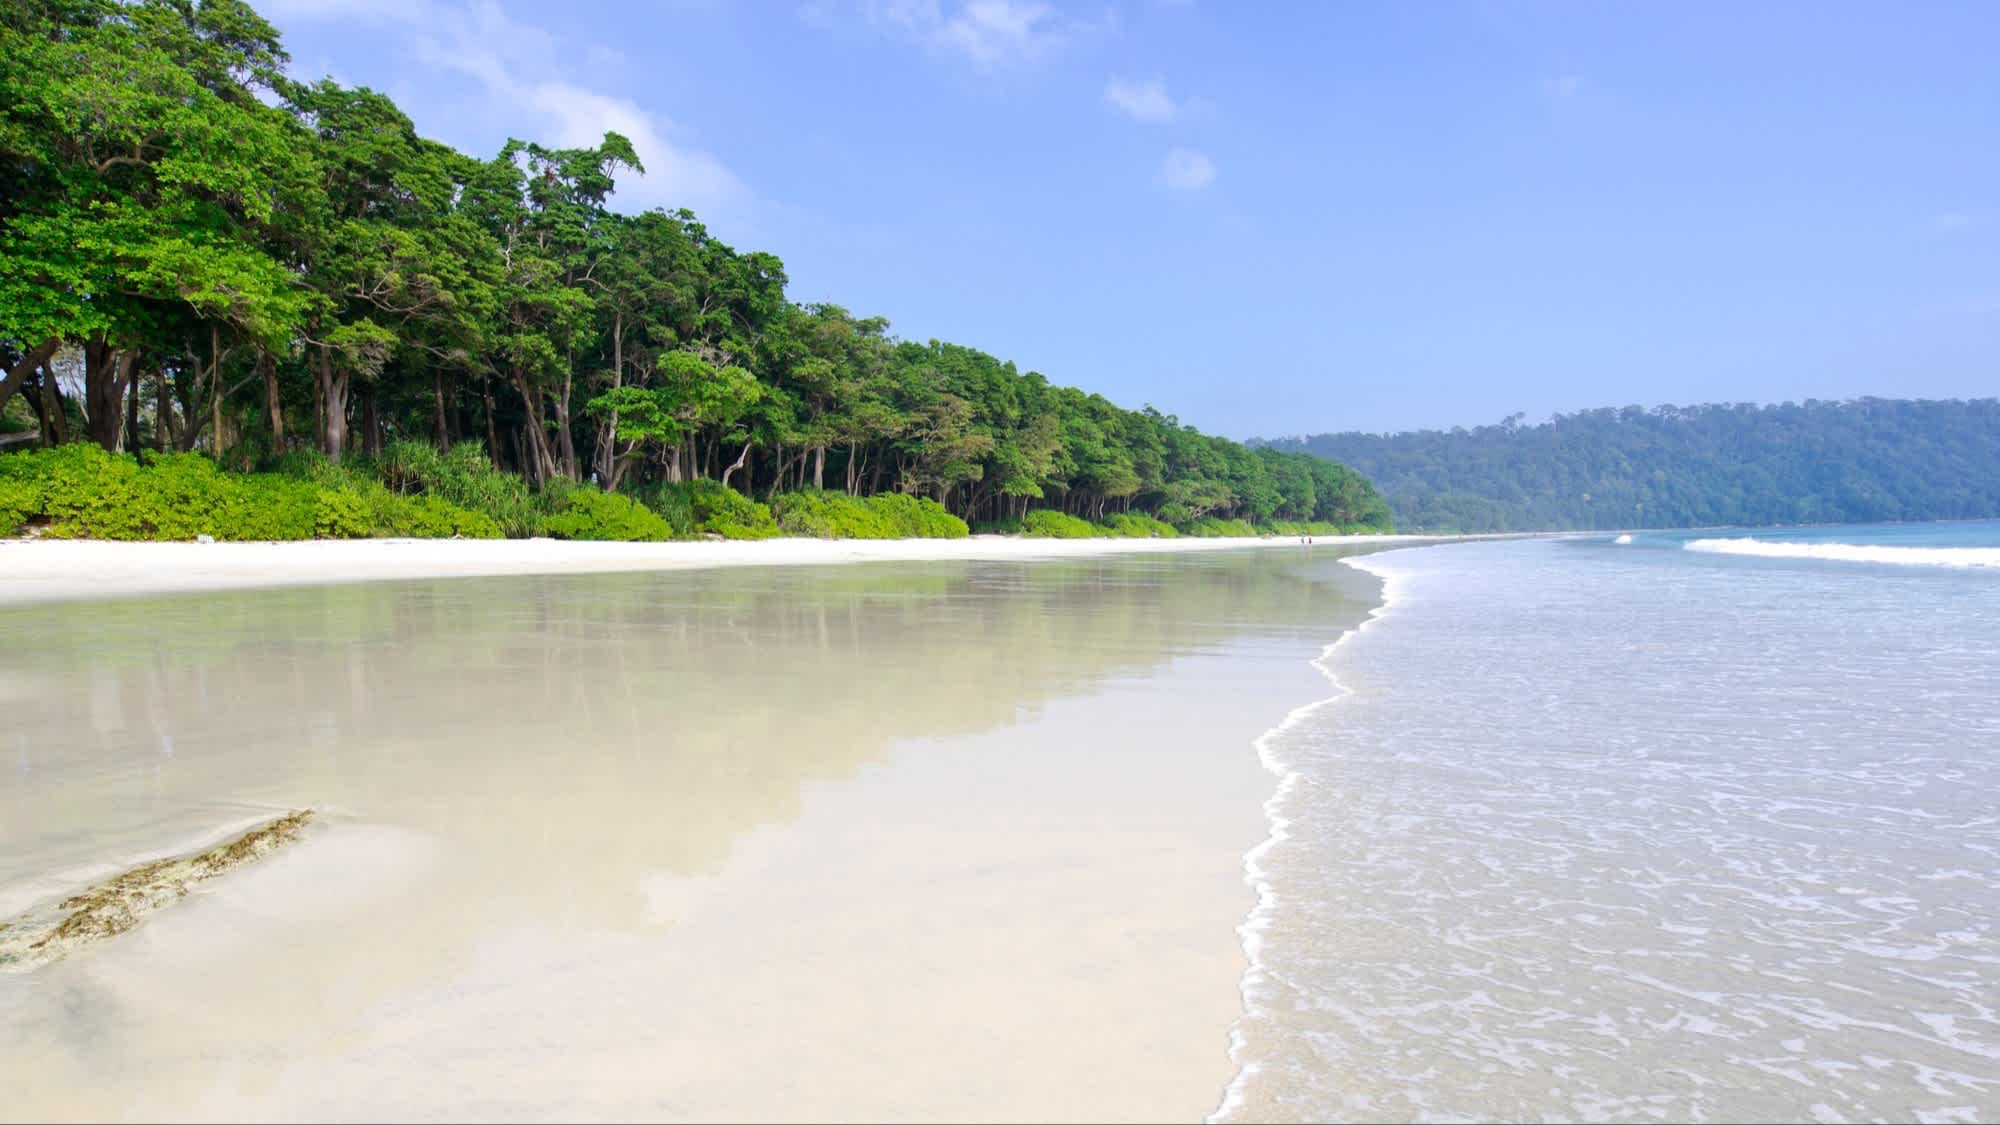 Flacher, heller Sandstrand Radhanagar Beach, Havelock Island, Indien bei Sonnenschein und mit Blick auf den dichten Dschungel.